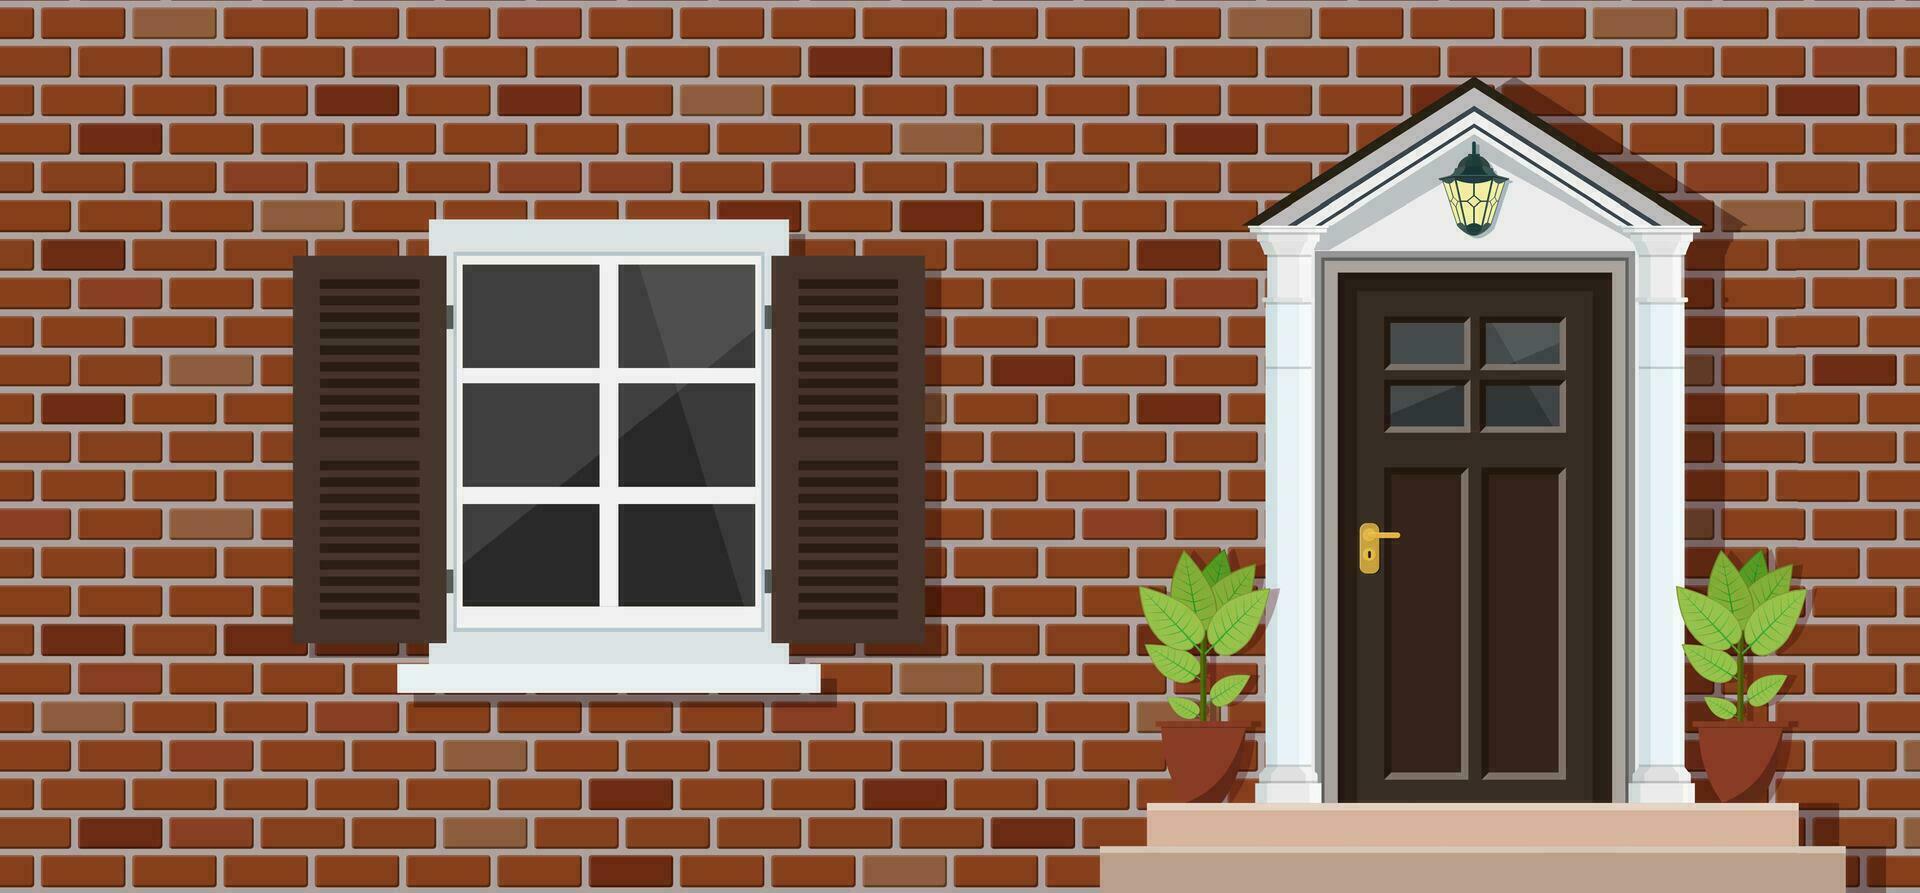 de madeira porta e janela em tijolo casa frente visualizar, arquitetura fundo, construção casa real Estado pano de fundo. vetor ilustração dentro plano estilo